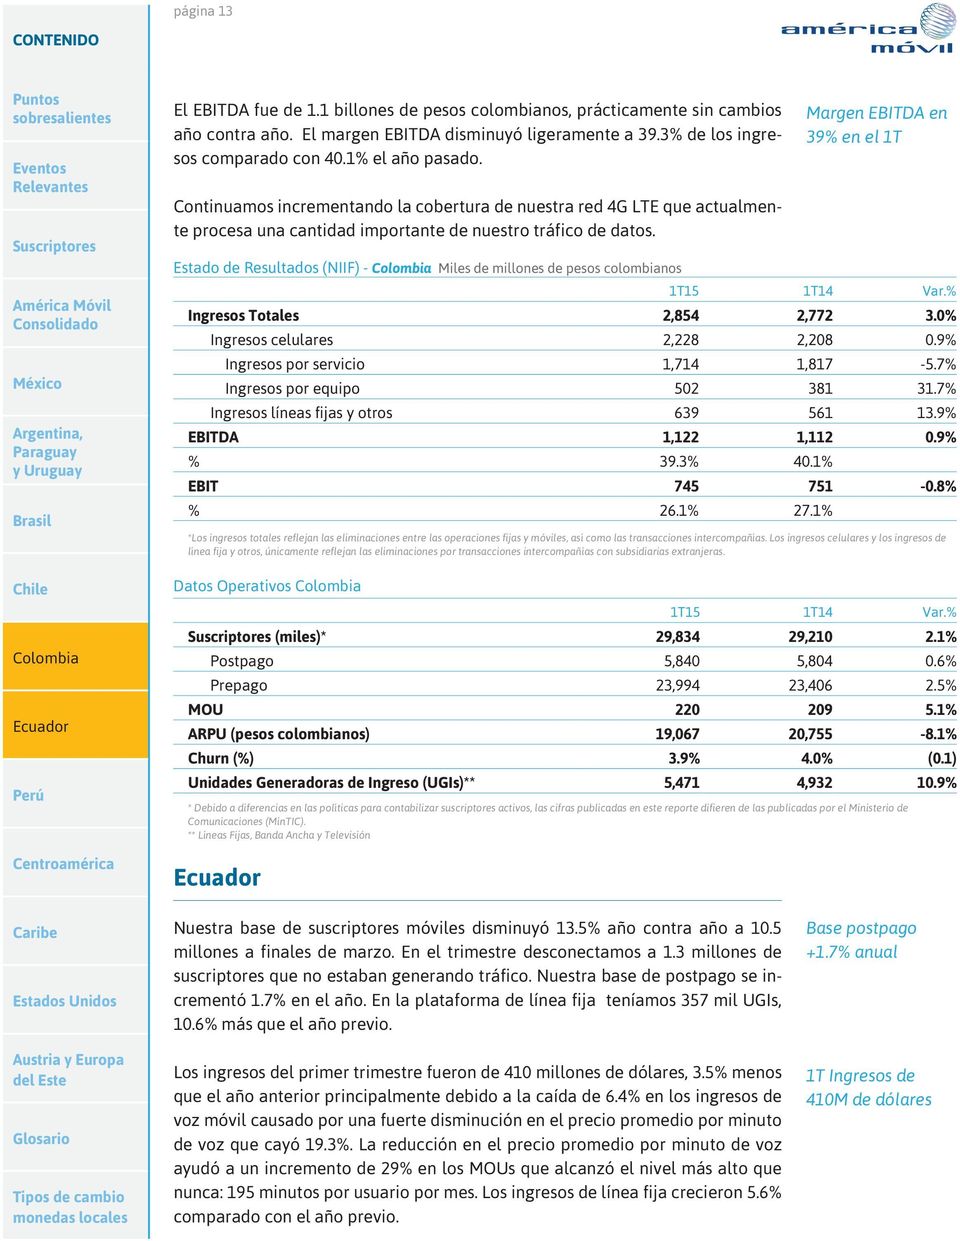 Estado de Resultados (NIIF) - Miles de millones de pesos colombianos Margen EBITDA en 39% en el 1T Ingresos Totales 2,854 2,772 3.0% Ingresos celulares 2,228 2,208 0.